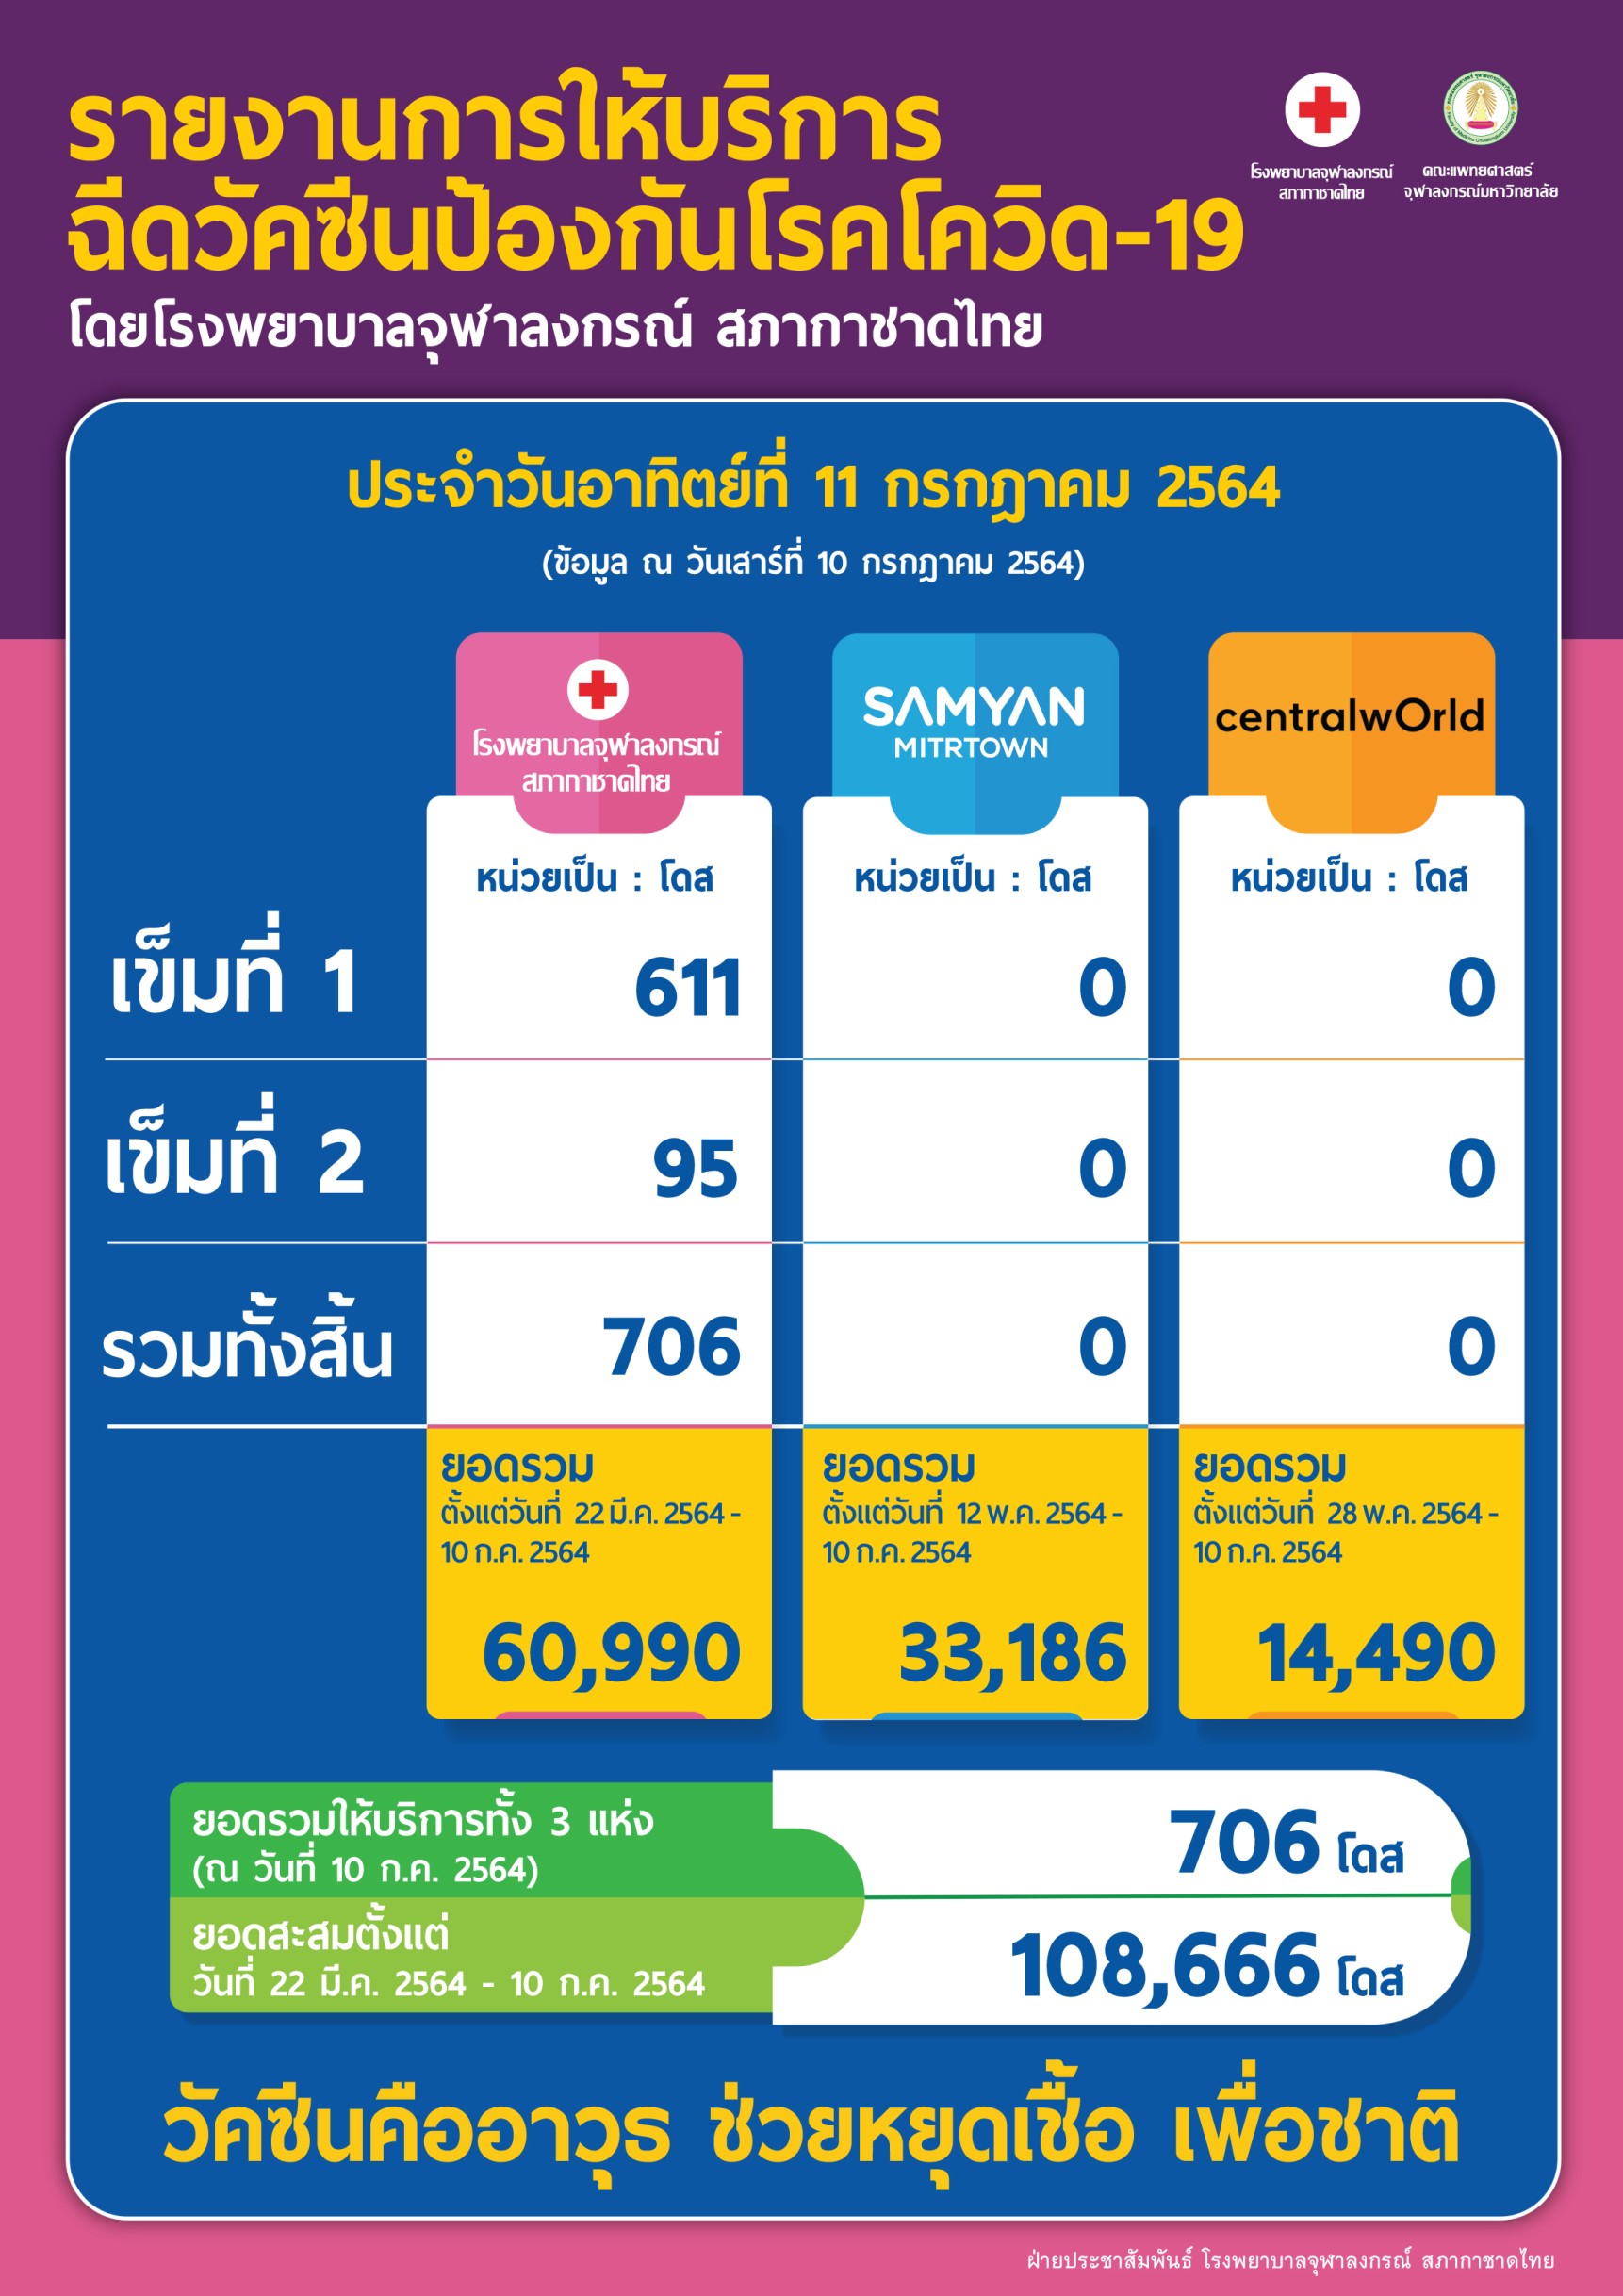 รายงานการให้บริการฉีดวัคซีนป้องกันโรคโควิด-19โดยโรงพยาบาลจุฬาลงกรณ์ สภากาชาดไทย ประจำวันอาทิตย์ที่ 11 กรกฎาคม 2564